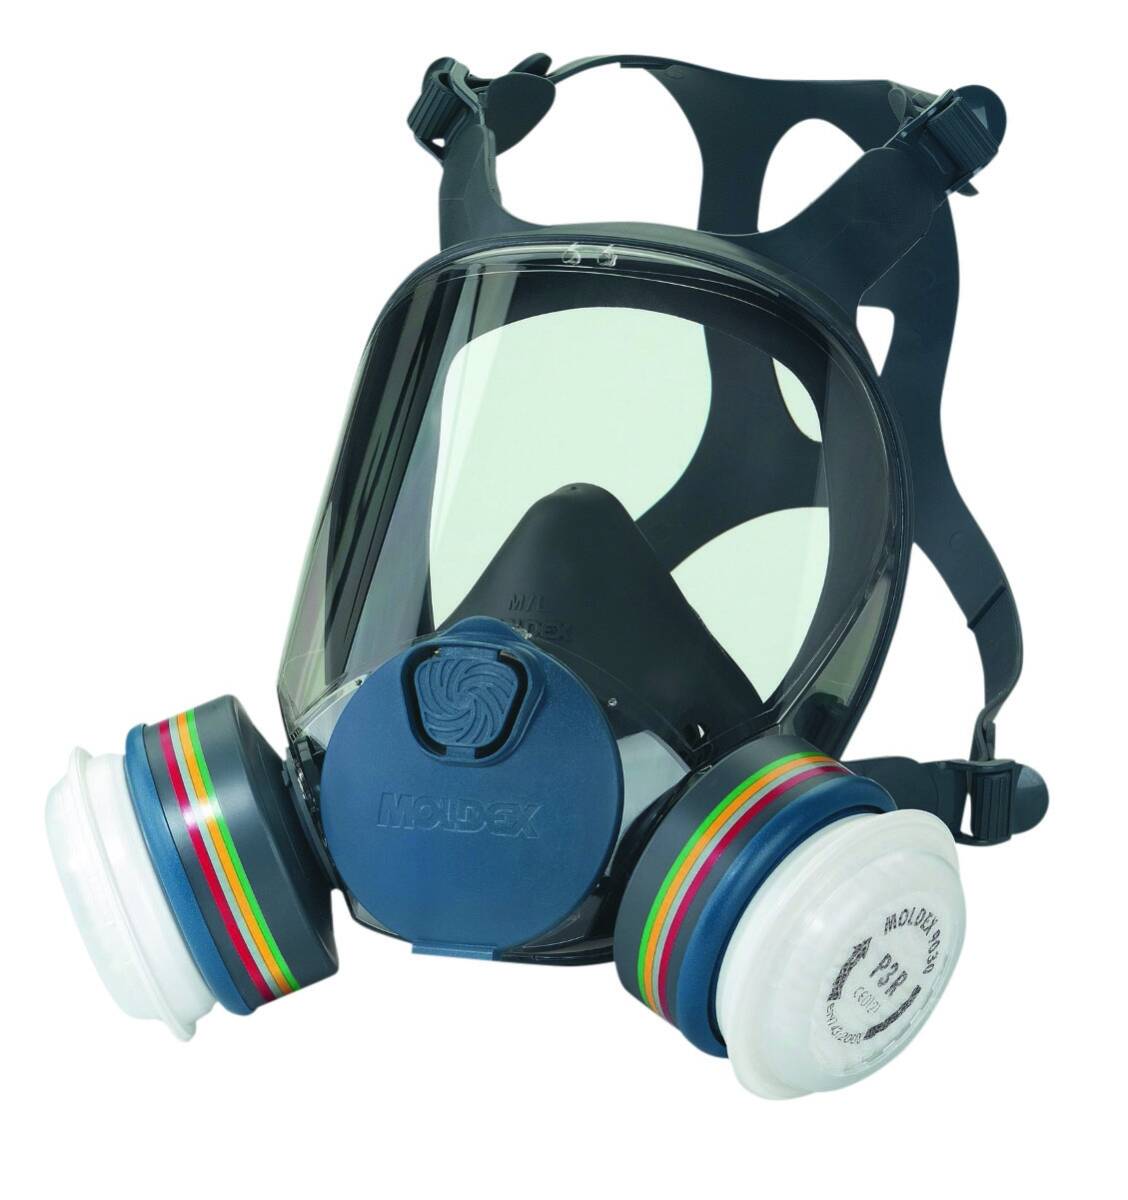 Masque respiratoire série 9000 